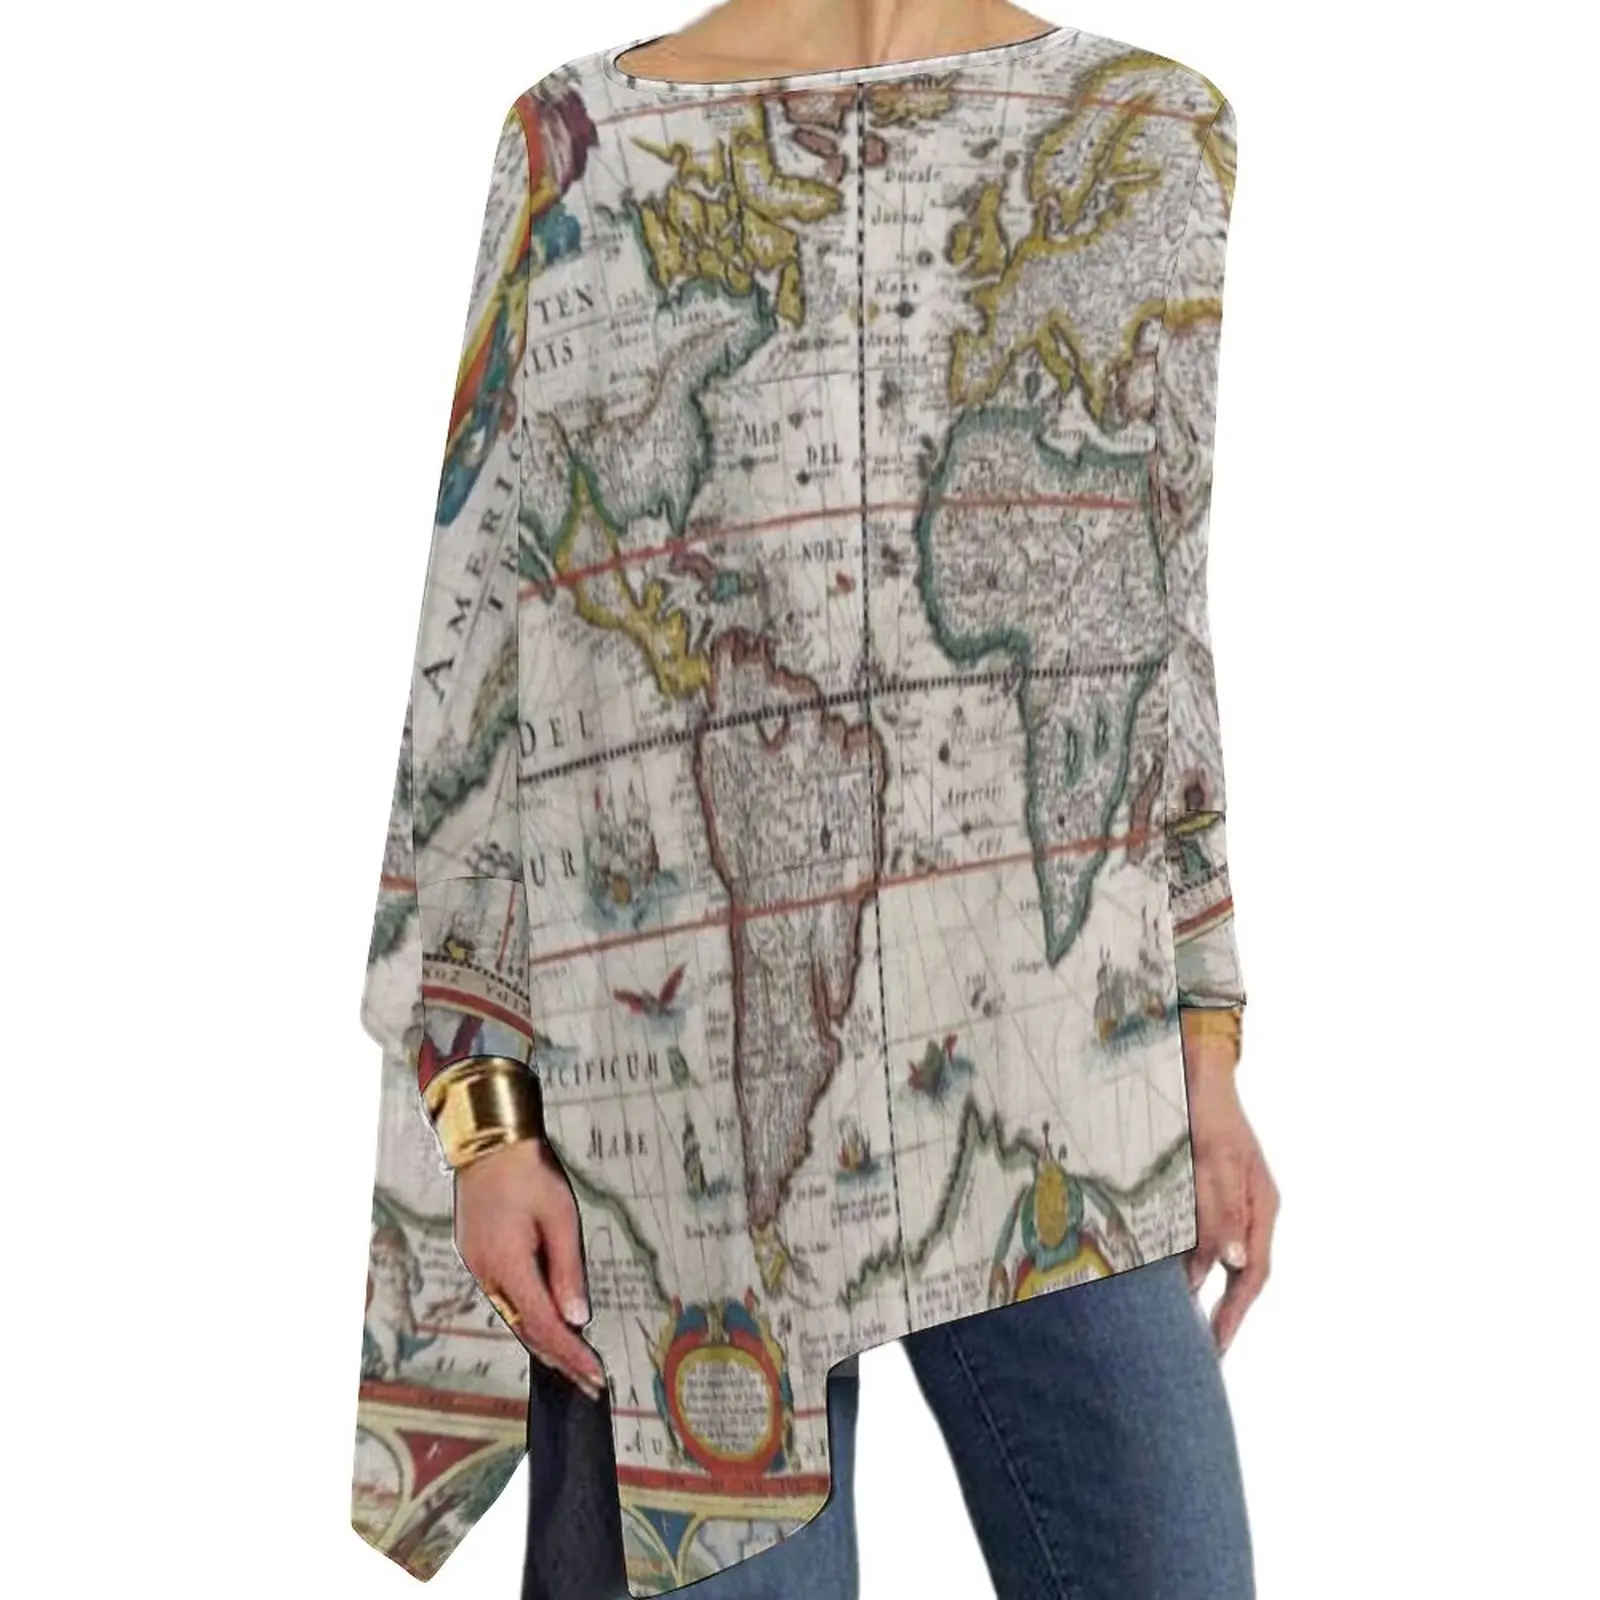 

Футболка женская с изображением карты земли, элегантная дизайнерская рубашка оверсайз с длинным рукавом, с принтом карты мира в античном стиле, подарок на день рождения